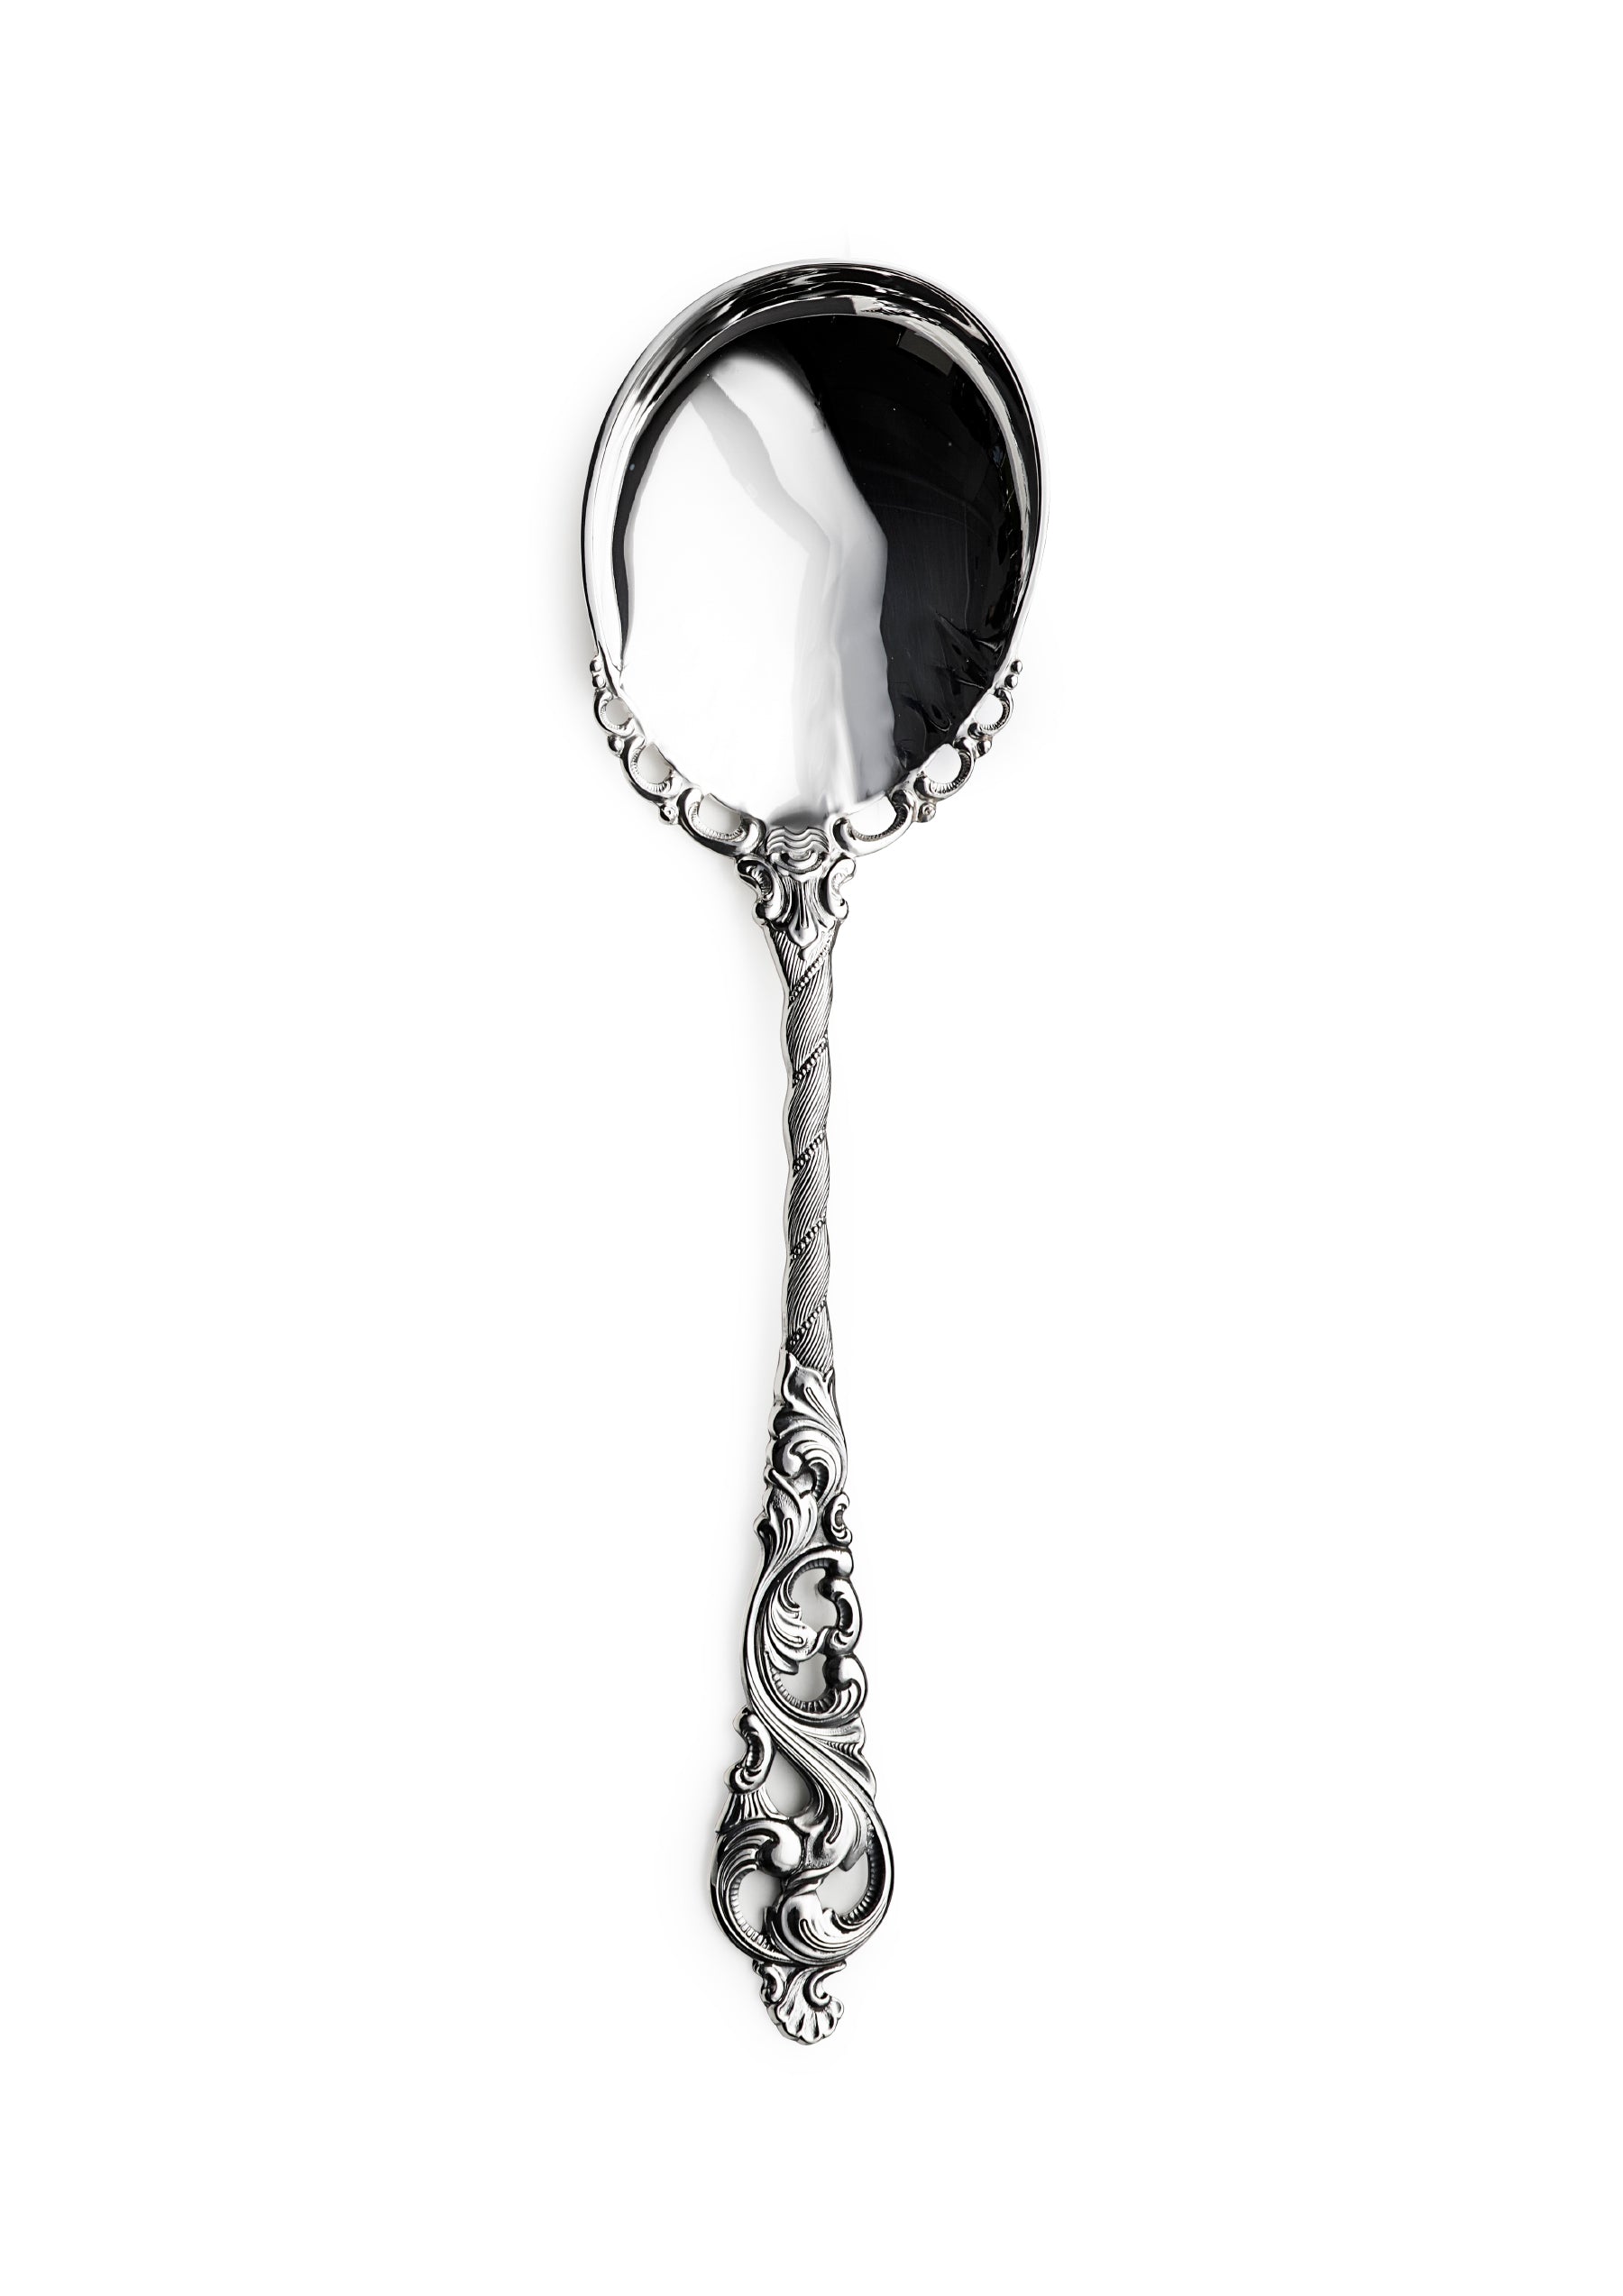 Double rococo serving spoon